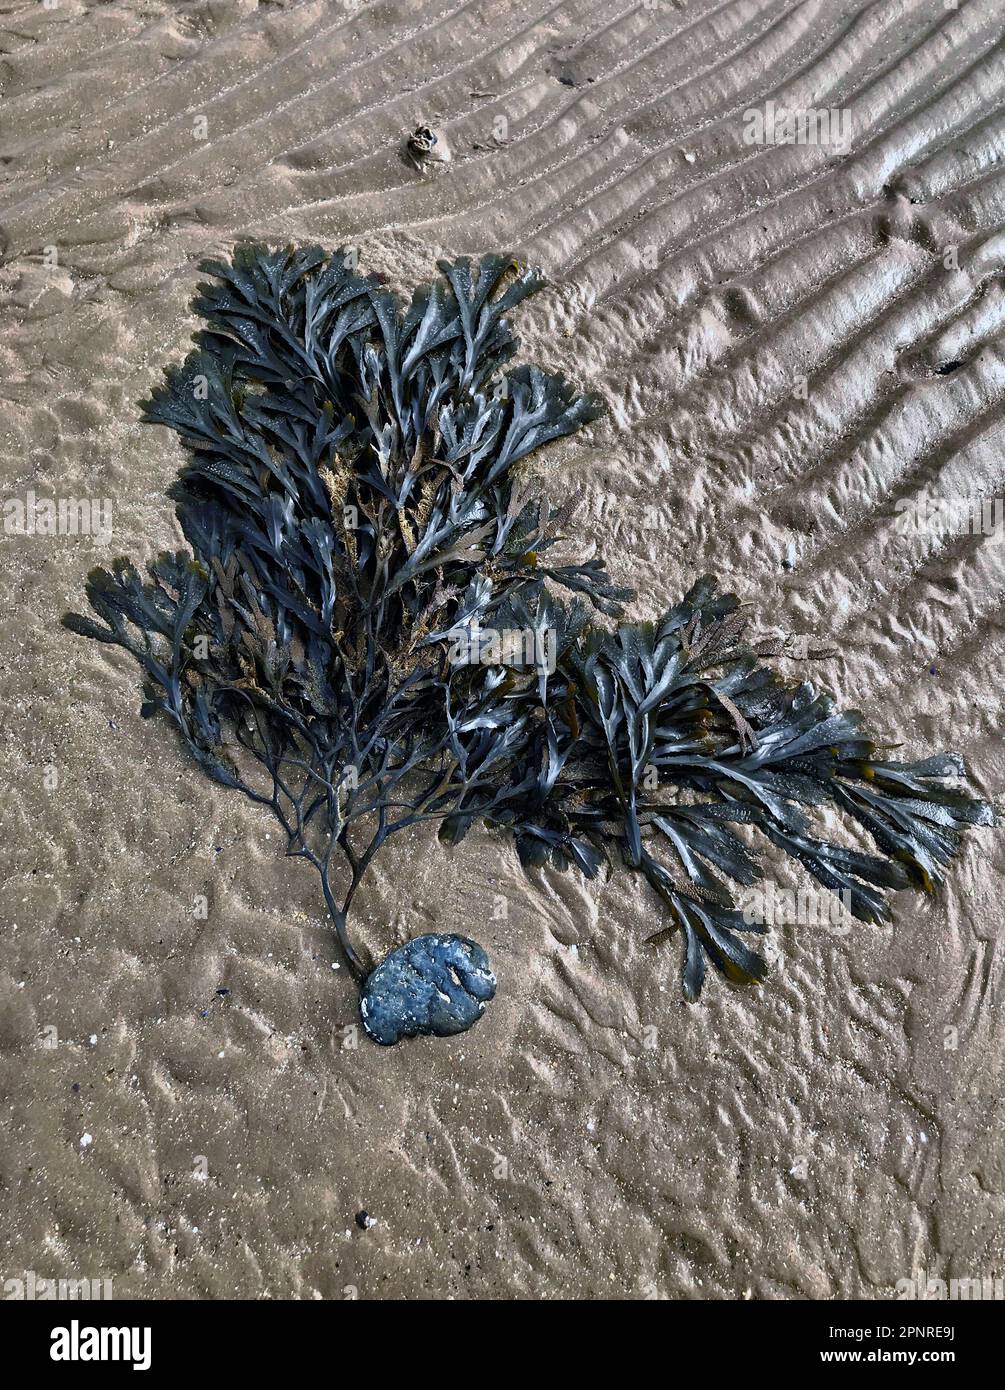 Râtelier dentelé (Fucus serratus) algues lavées après une tempête sur la rive de la mer, toujours attaché à une pierre lumière du soir tourne des ondulations en sable doré Banque D'Images